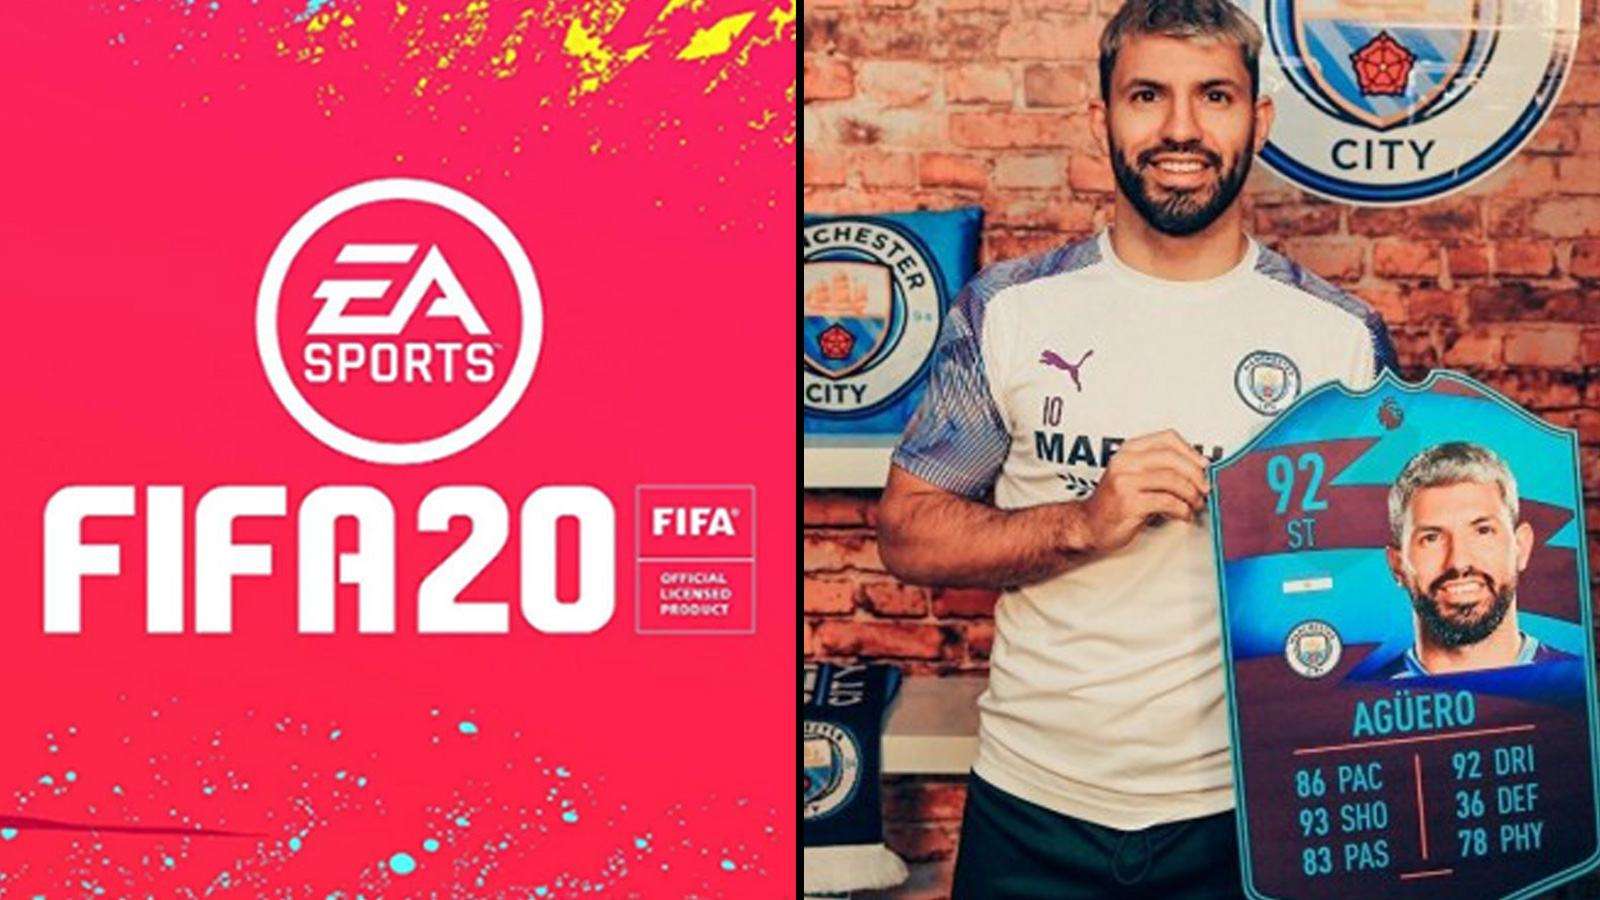 Aguero portant sa carte POTM sur FIFA 20